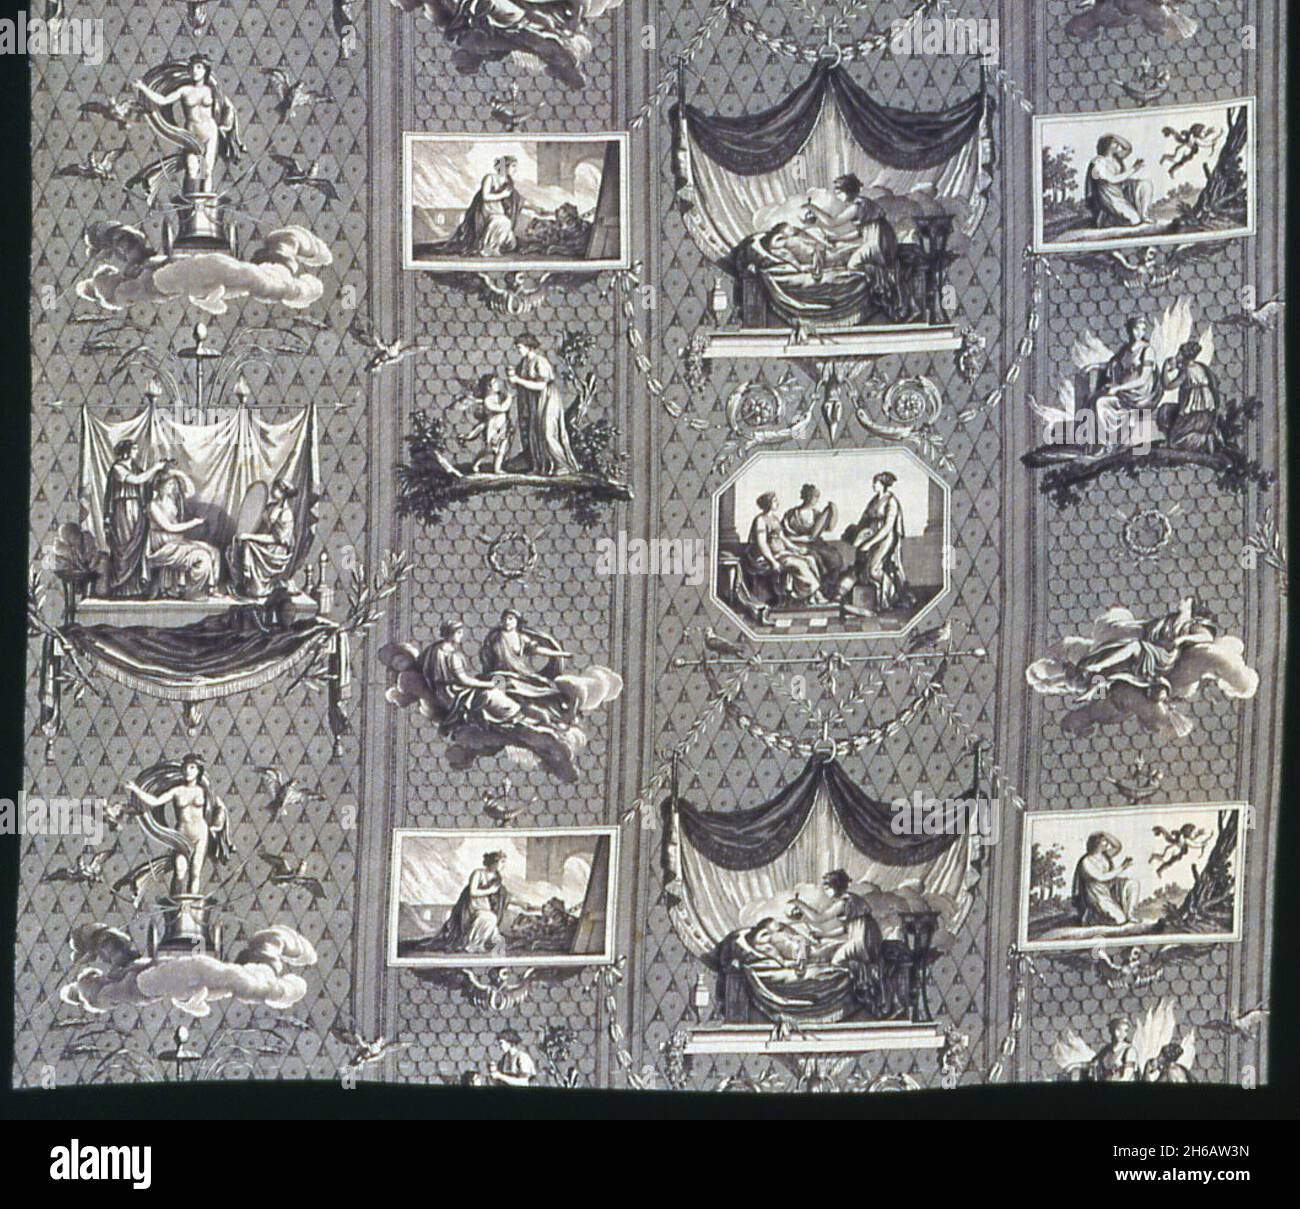 L'Historie de Psyche (die Geschichte von Psyche) (Möbelstoff), Frankreich, c. 1810. Entworfen von Jean Baptiste Huet nach Pierre-Paul Prud'Hon, hergestellt von der Manufaktur Oberkampf. Stockfoto